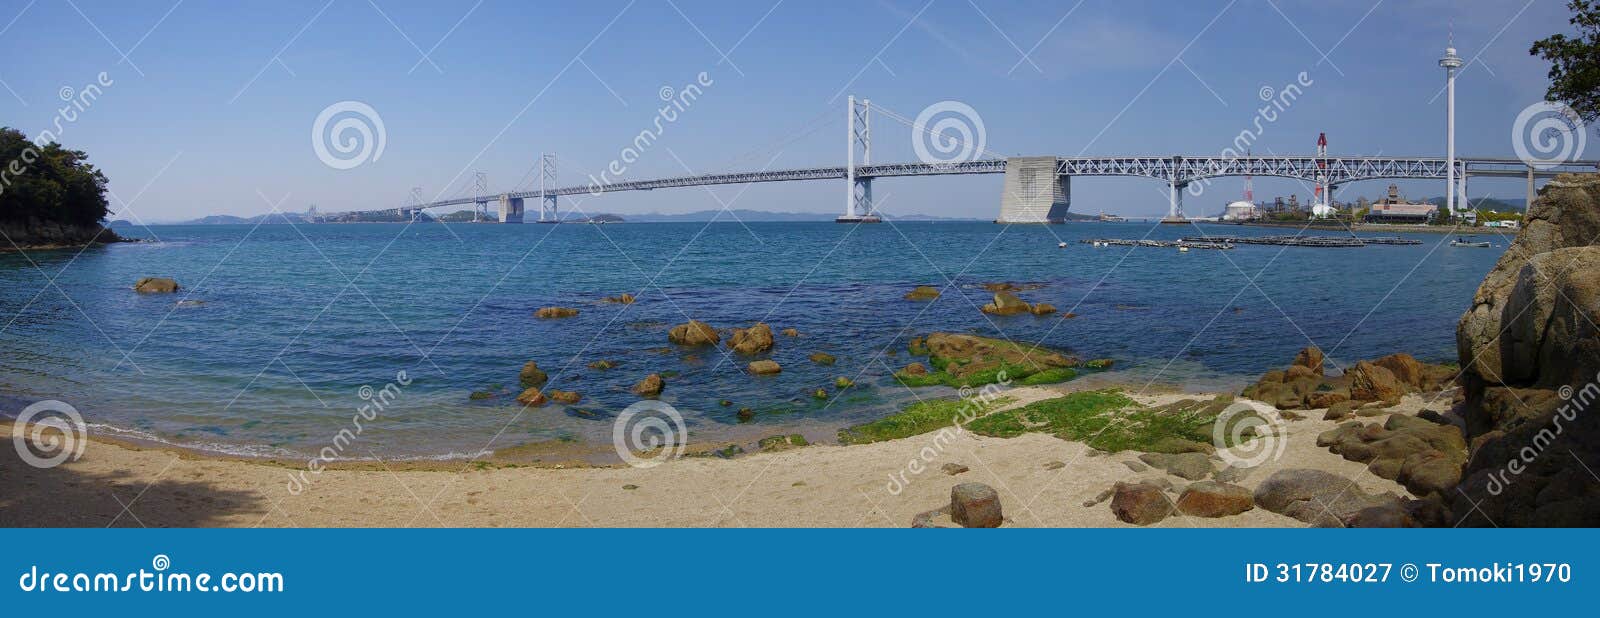 seto ohashi bridge (panorama)